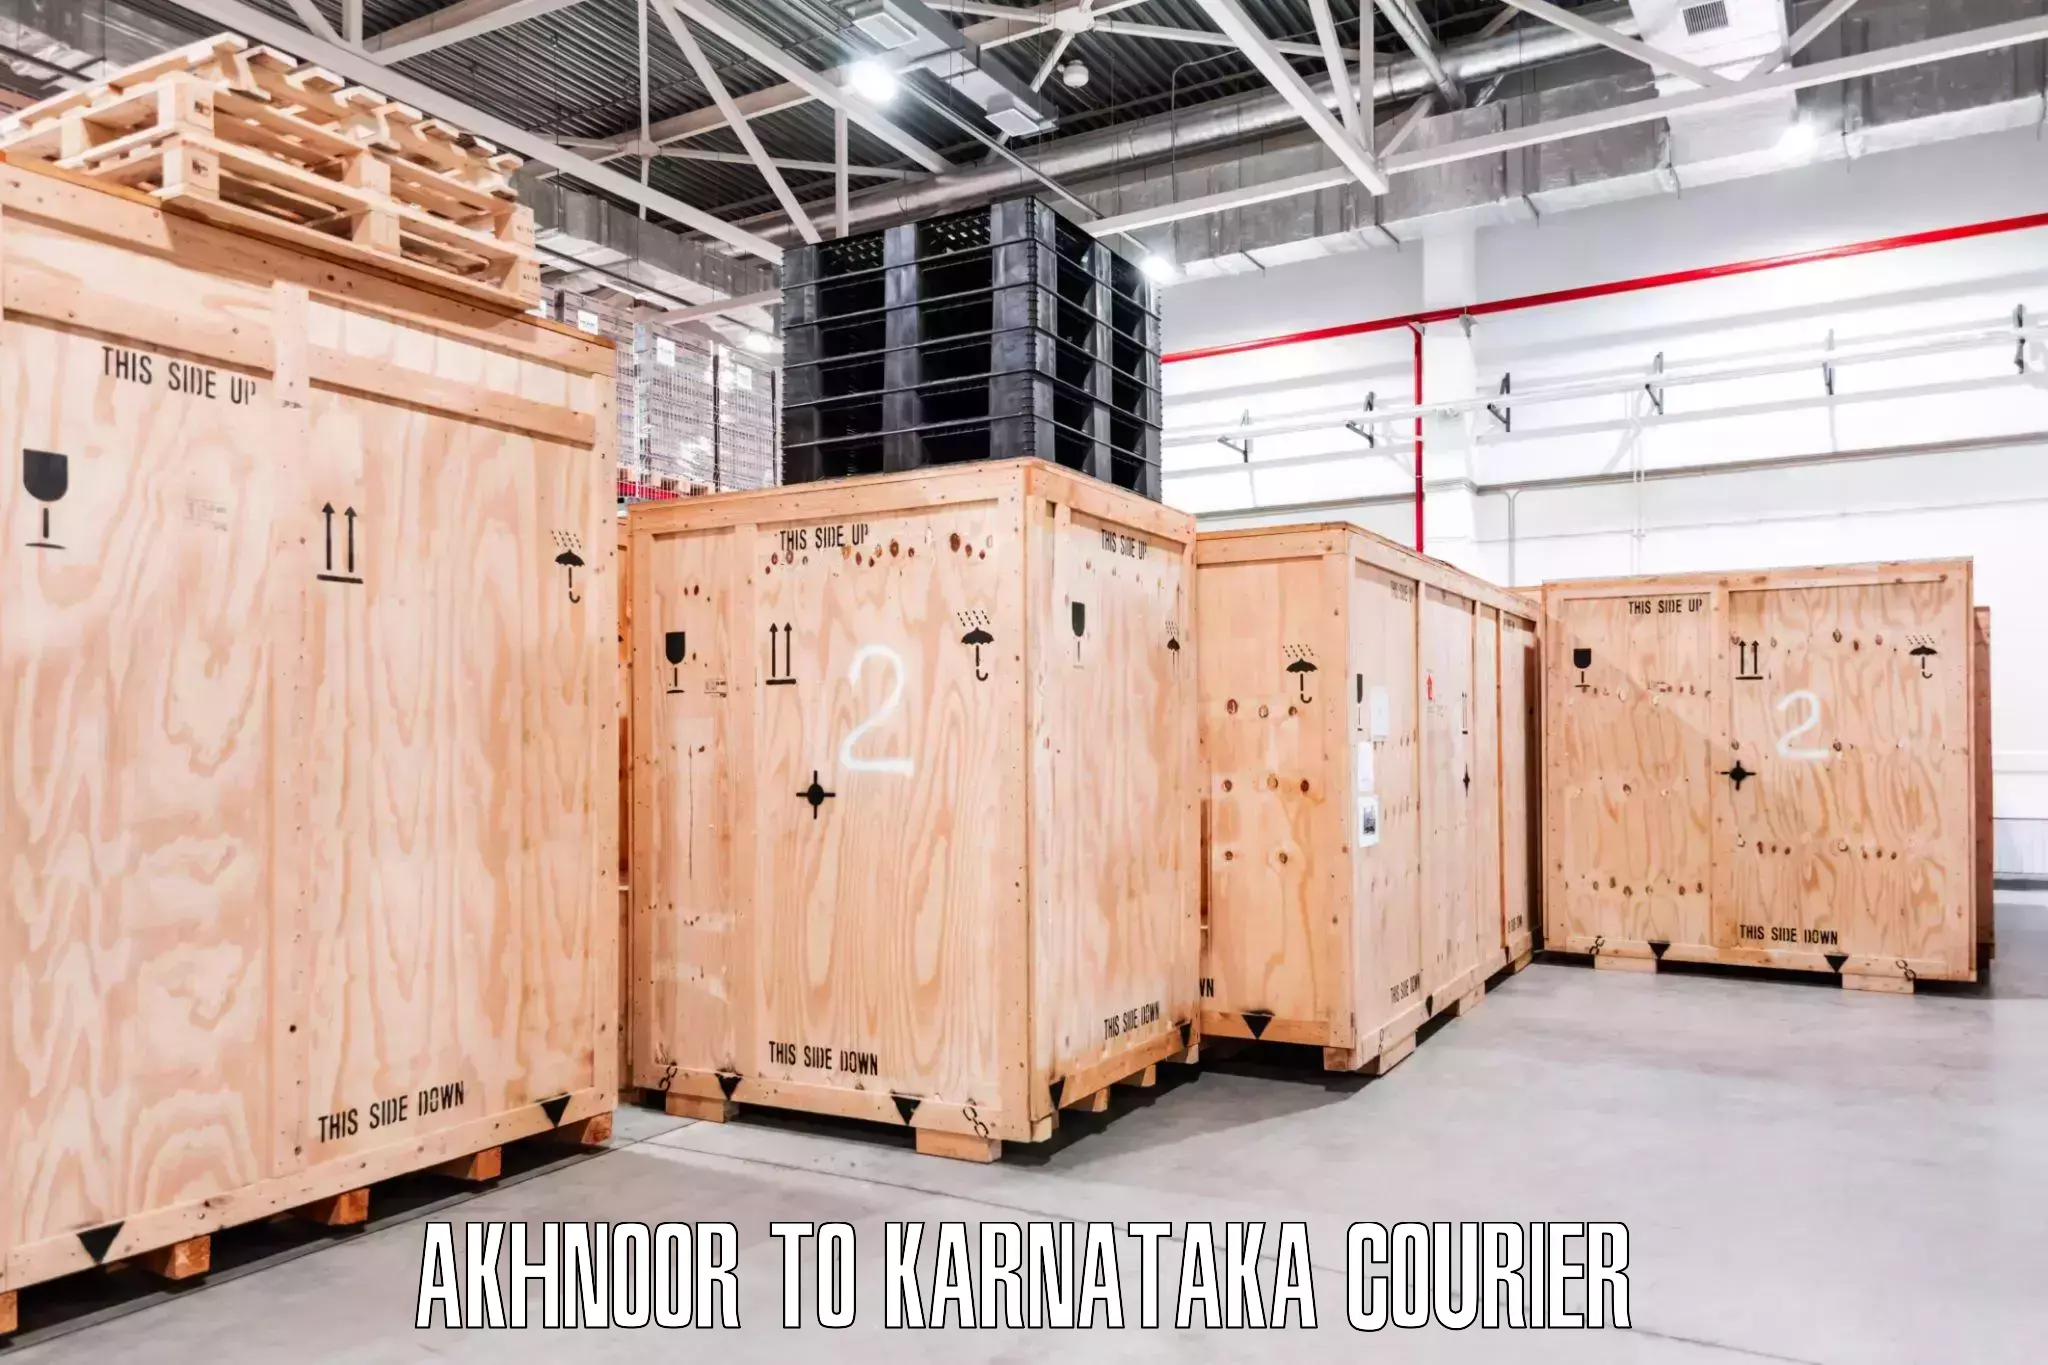 Professional furniture moving Akhnoor to Karnataka